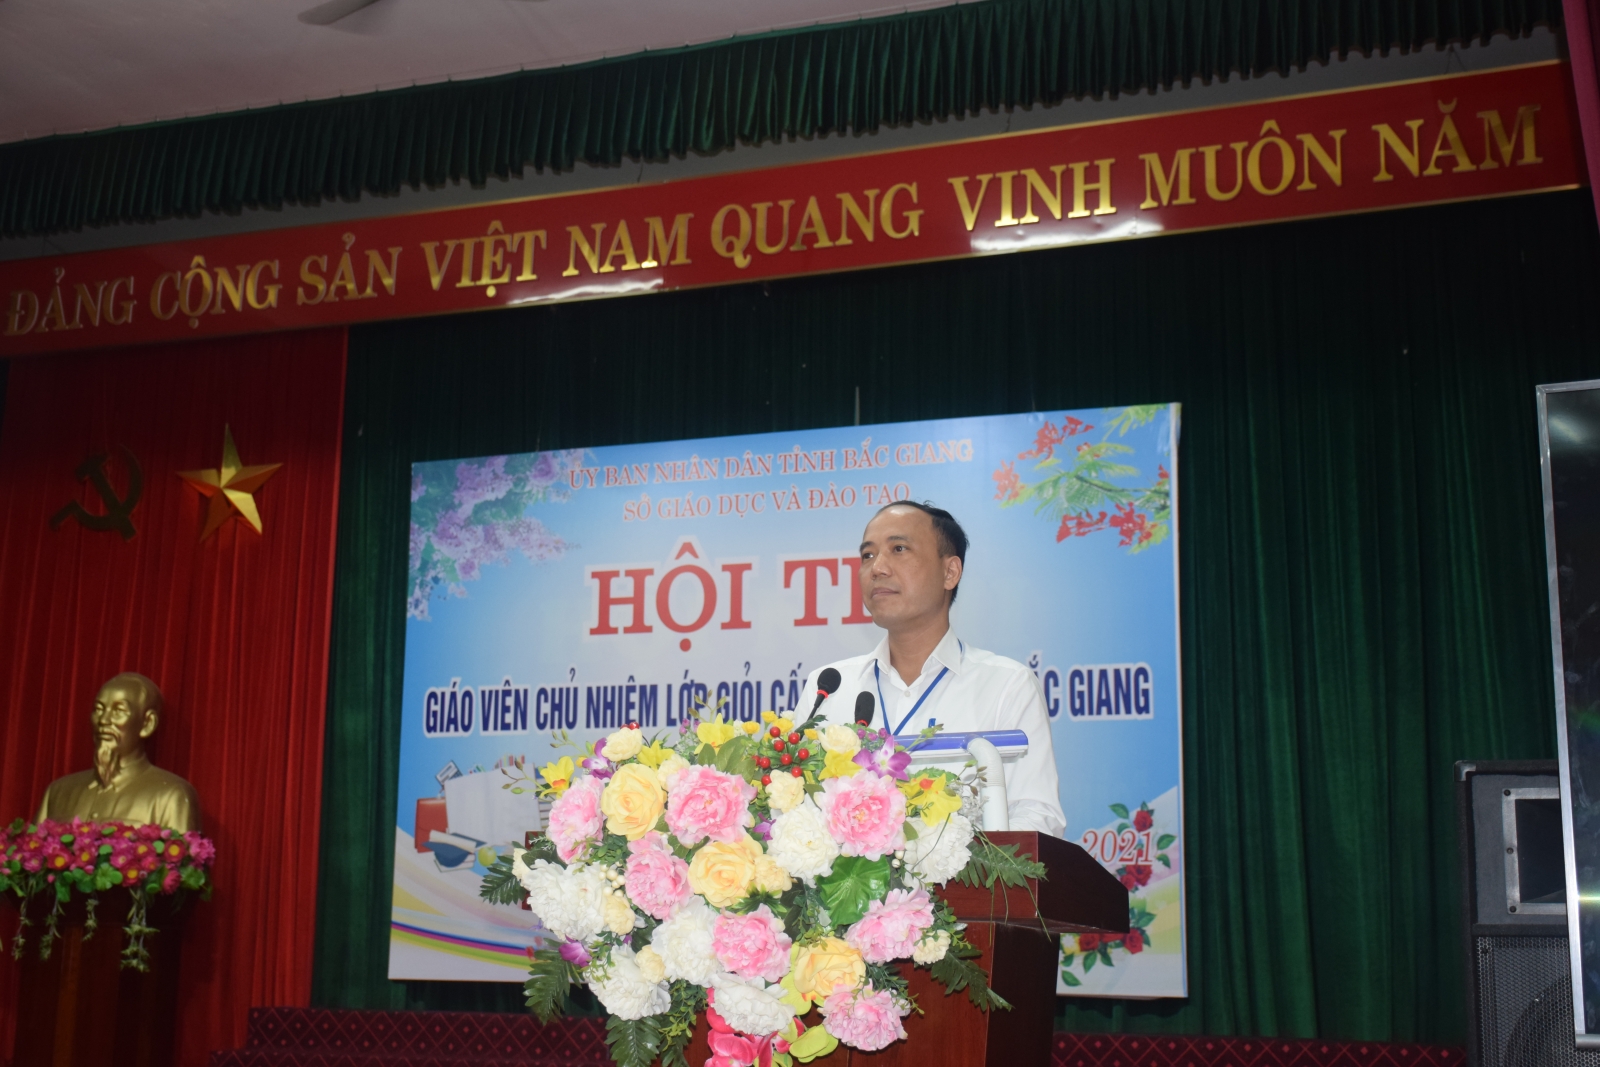 Bắc Giang: 120 giáo viên tiểu học đạt danh hiệu chủ nhiệm lớp giỏi cấp tỉnh - Ảnh minh hoạ 2